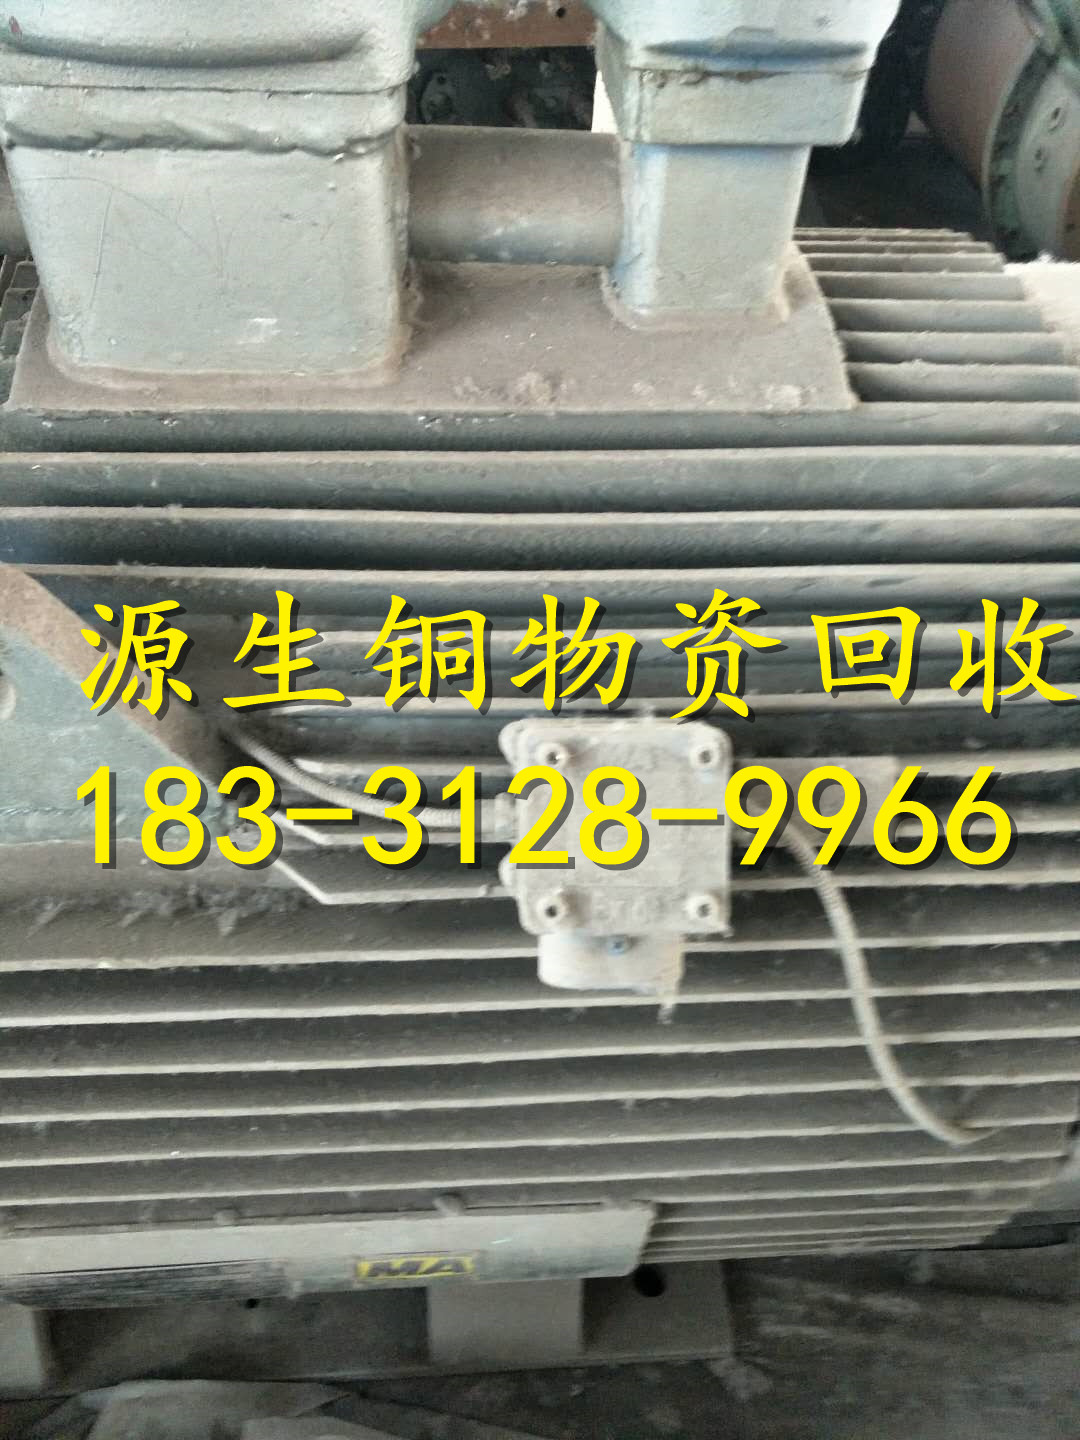 山西省吕梁市临县废电缆多少钱一吨,电缆回收价格√